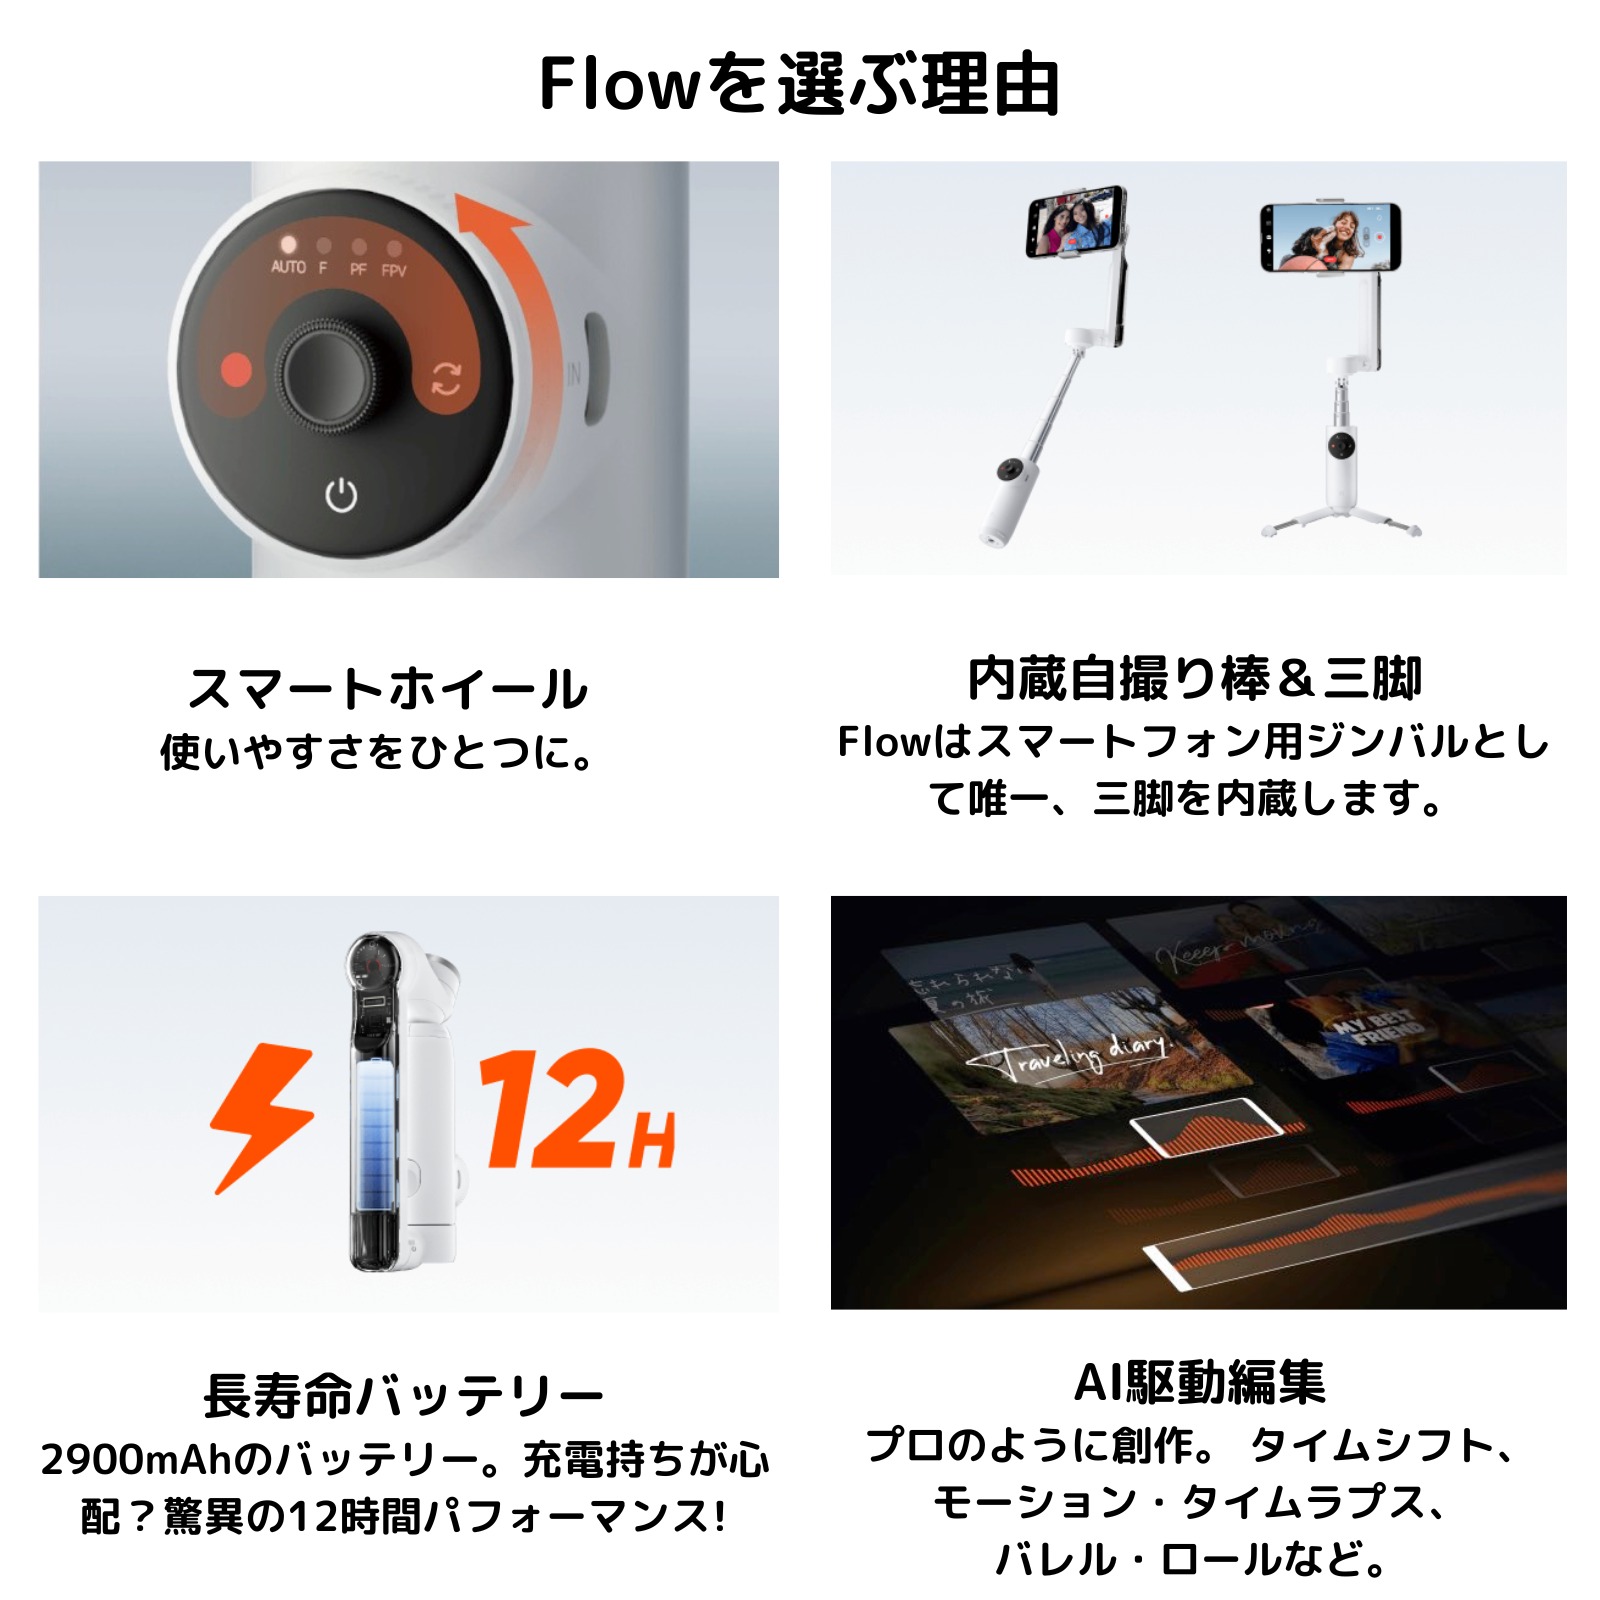 Insta360 Flow クリエーターキット ストーン グレイ 正規代理店